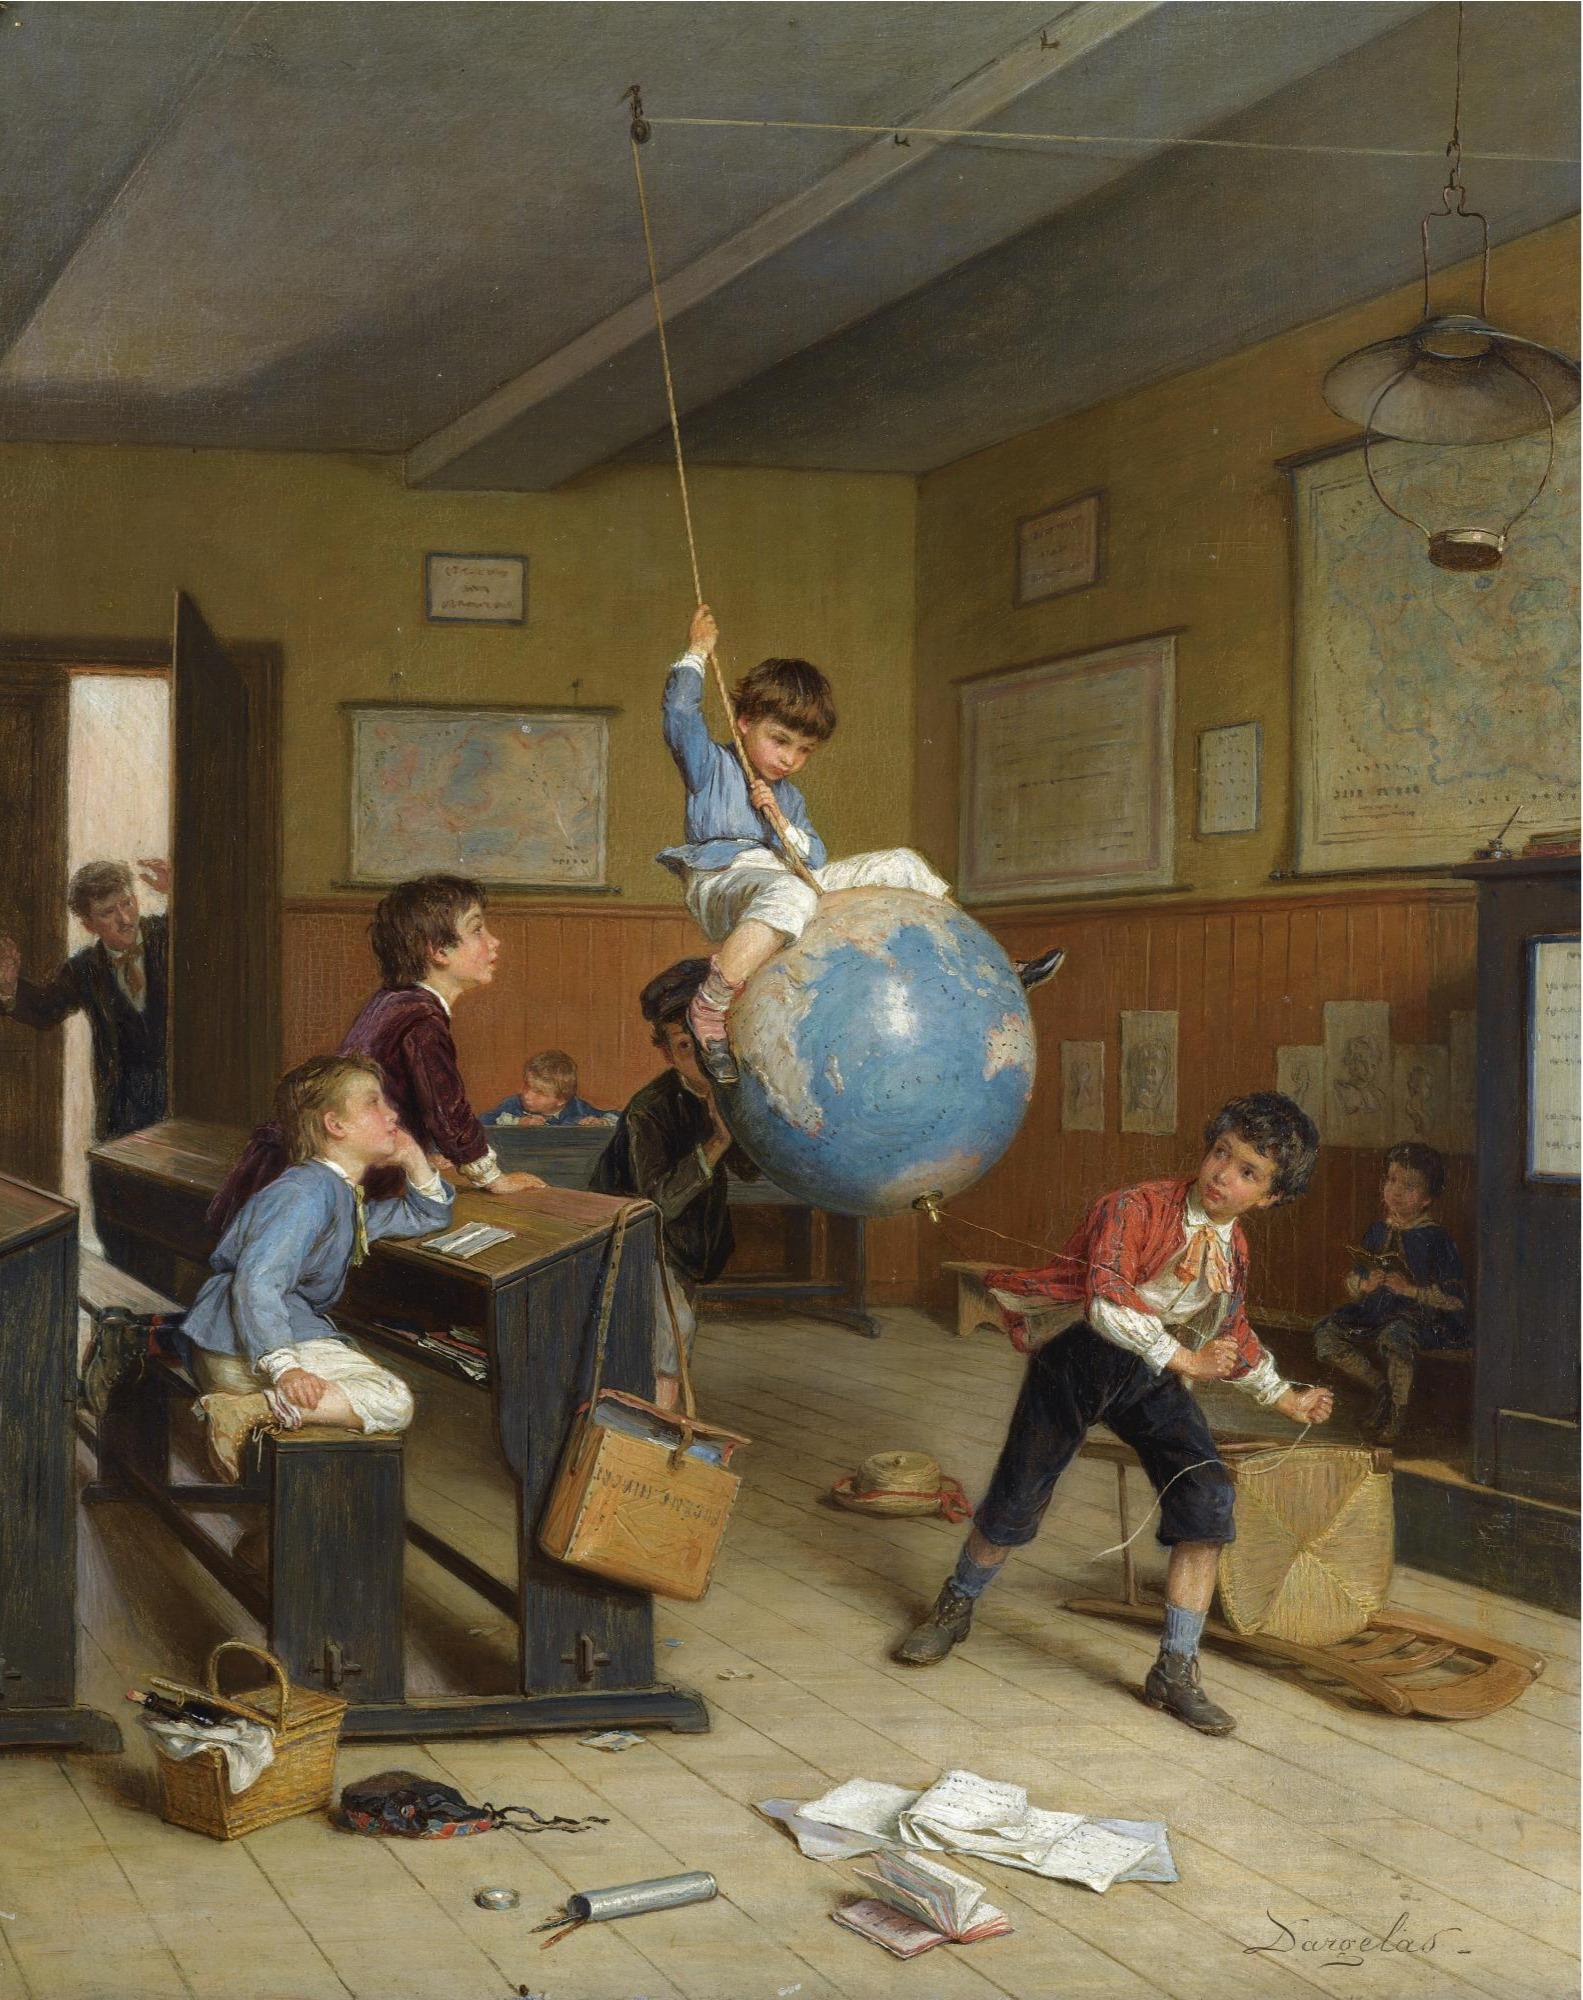 À Volta do Mundo by André Henri Dargelas - c. 1860 - 46 x 37,5 cm coleção privada